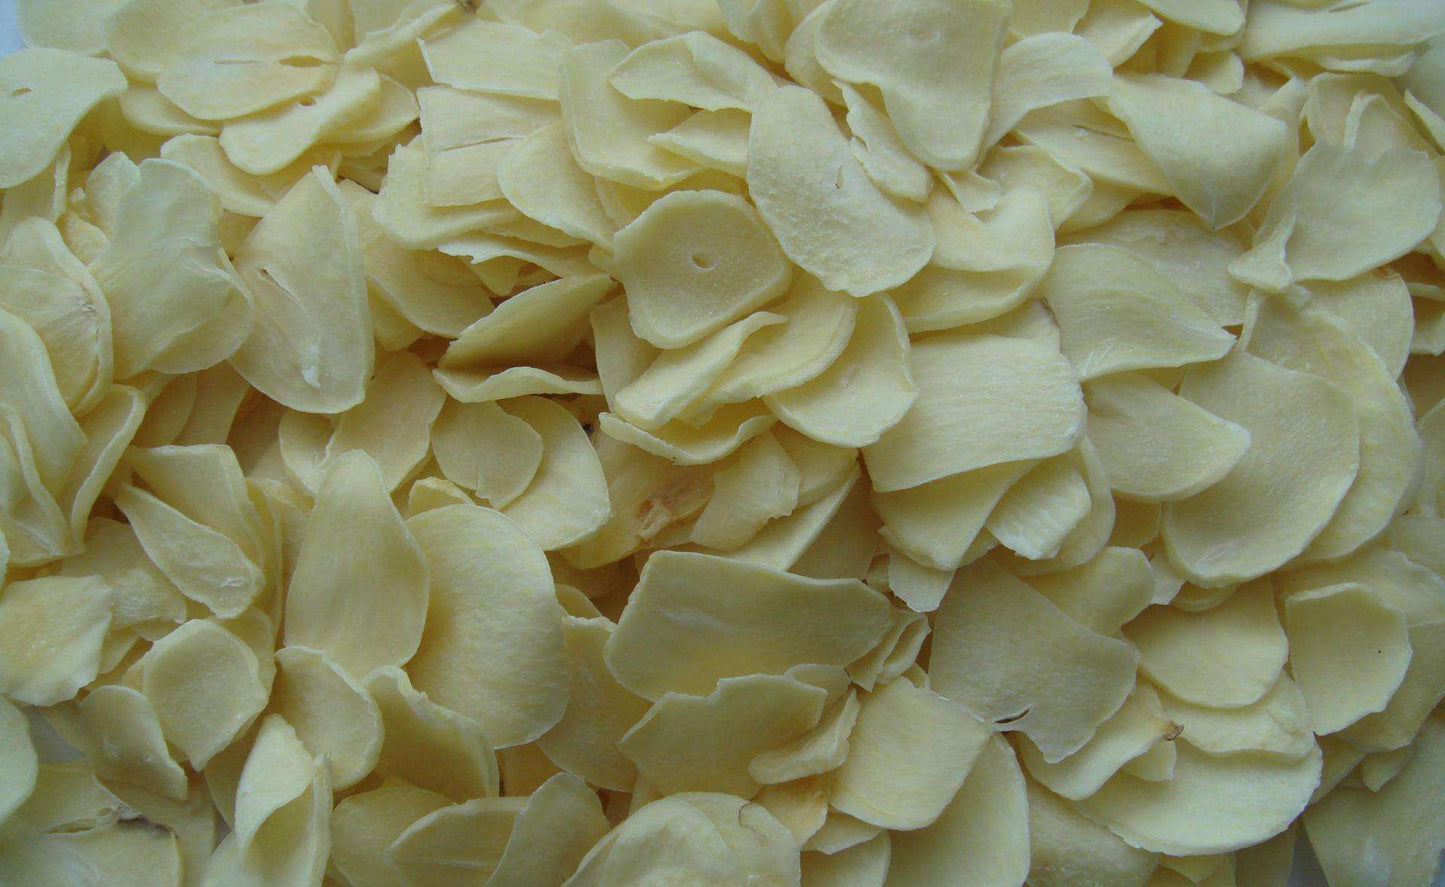 Garlic slices